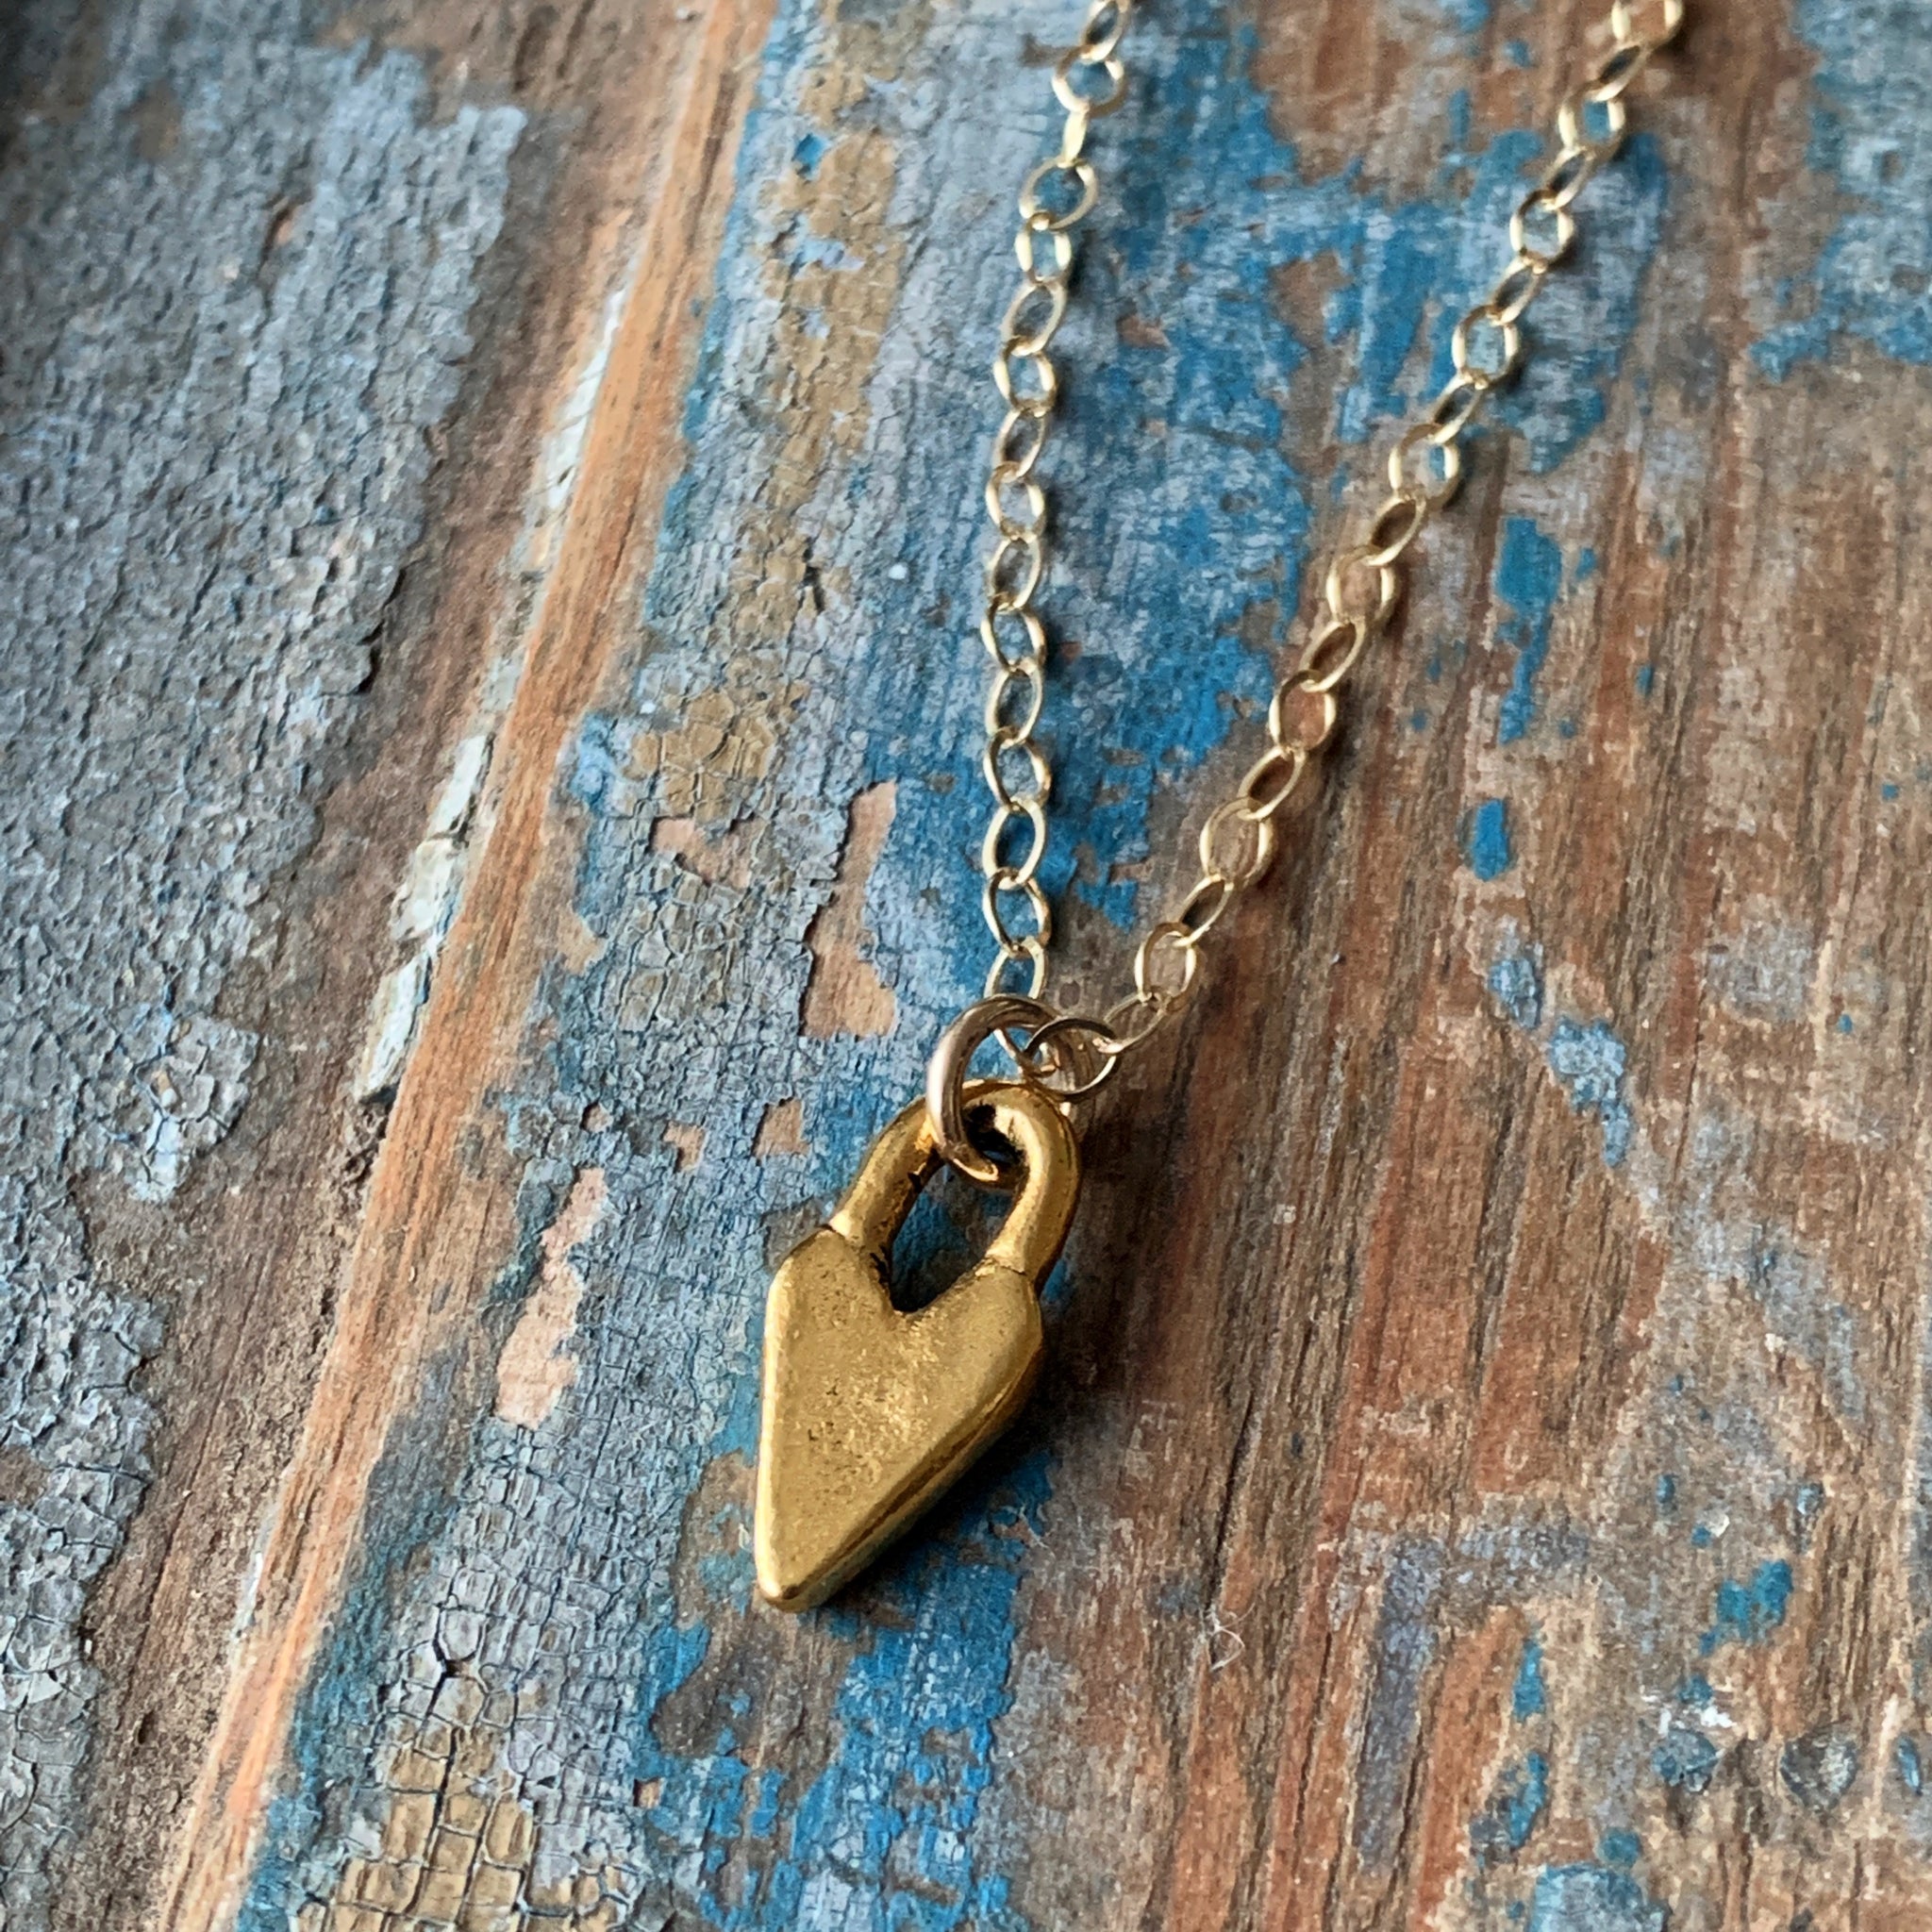 Tiny Gold Padlock Heart Necklace